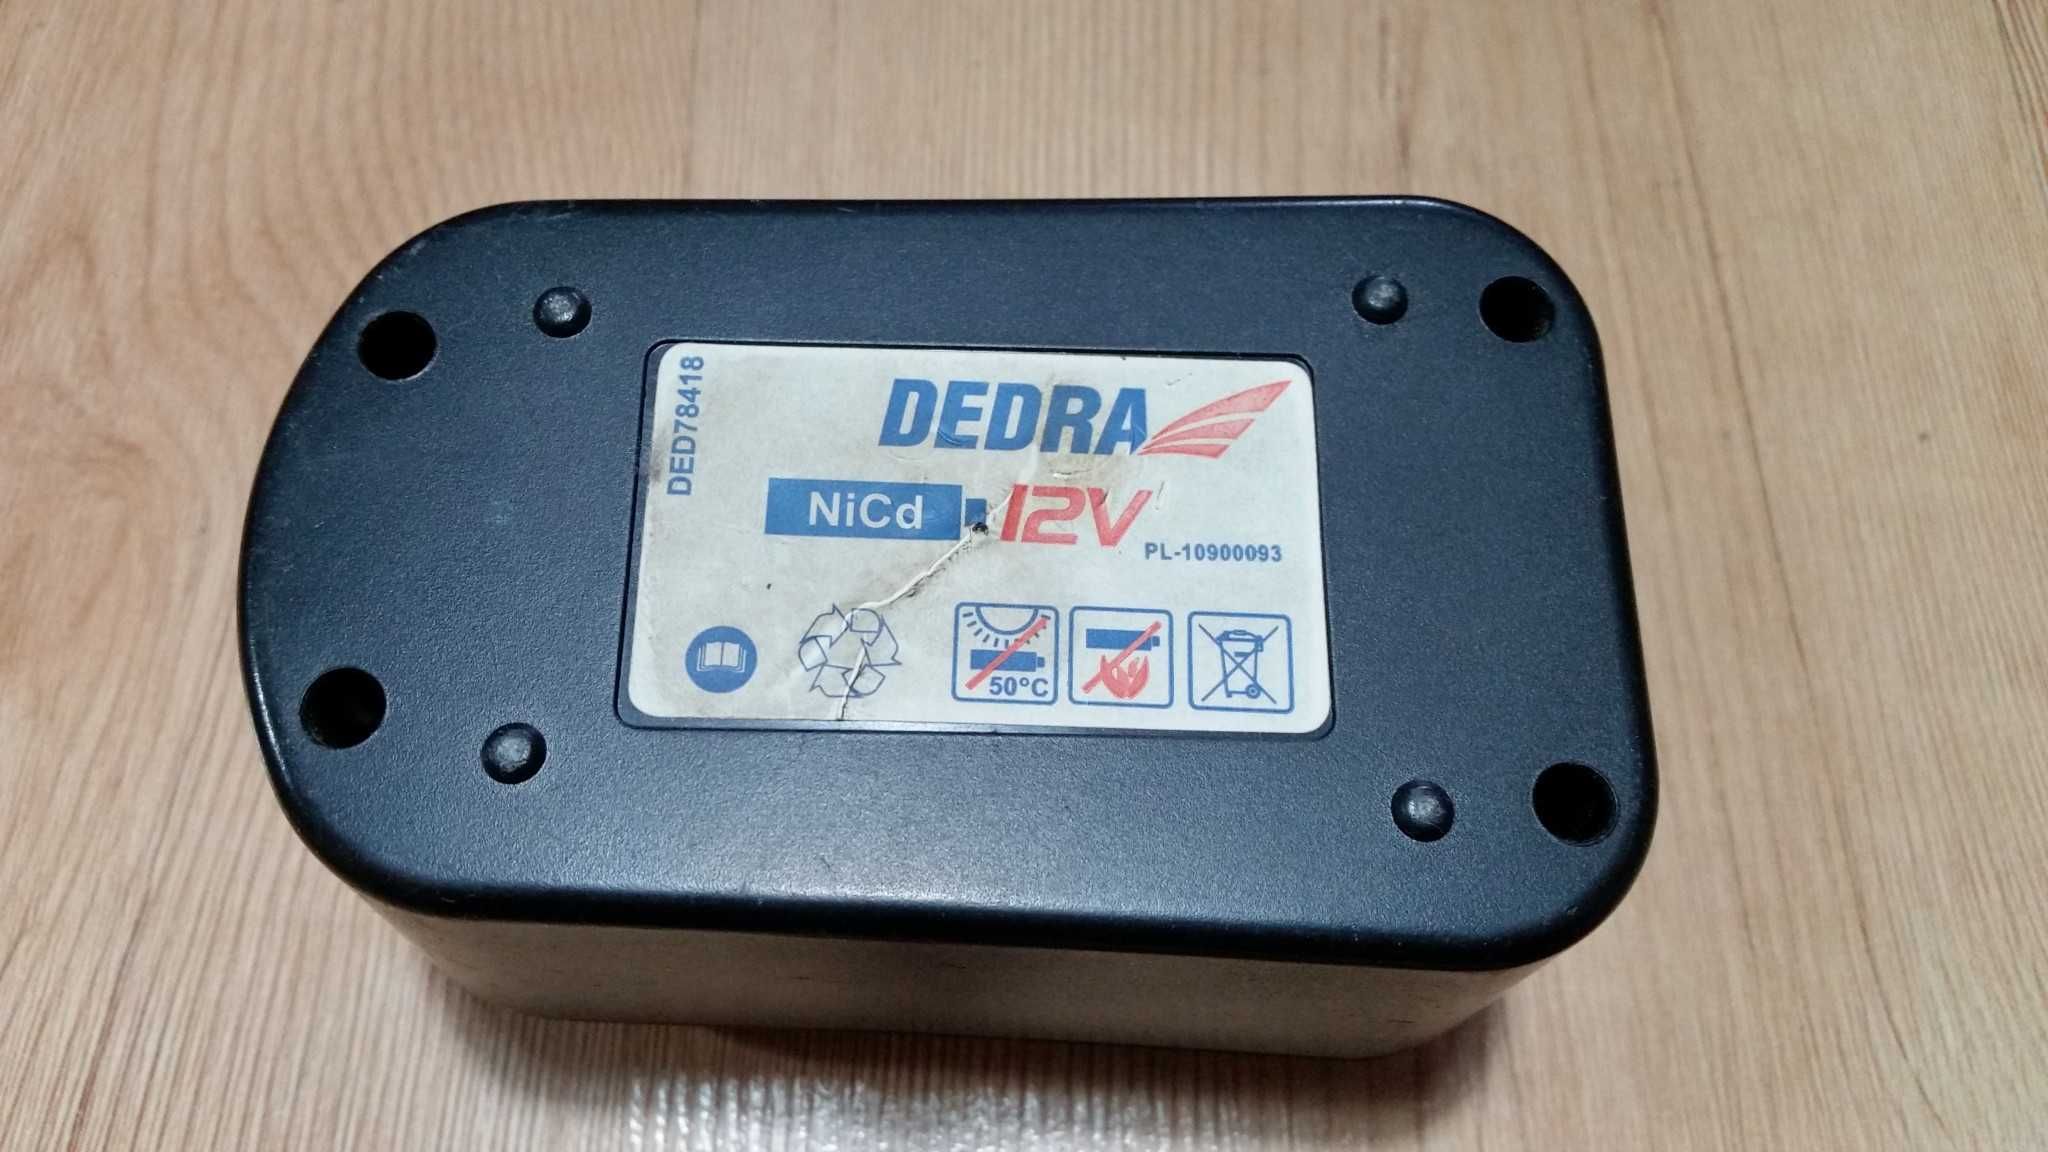 DEDRA – Wkład bateria akumulator wkrętarka 12v